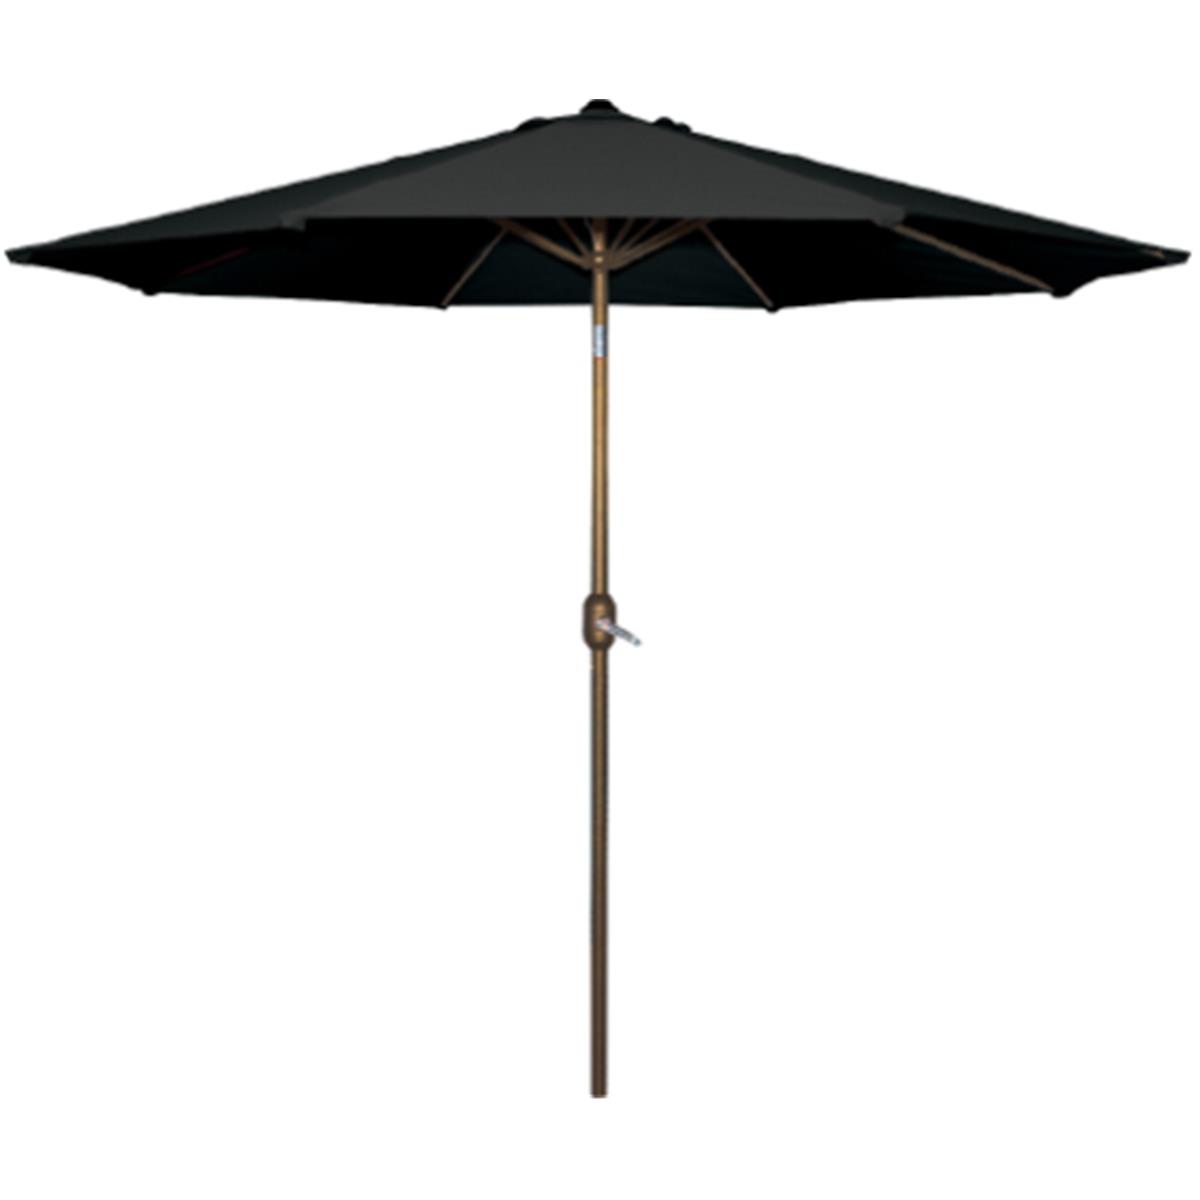 Picture of Bond Manufacturing B07 65680 9 x 9 ft. Aluminum Umbrella, Black